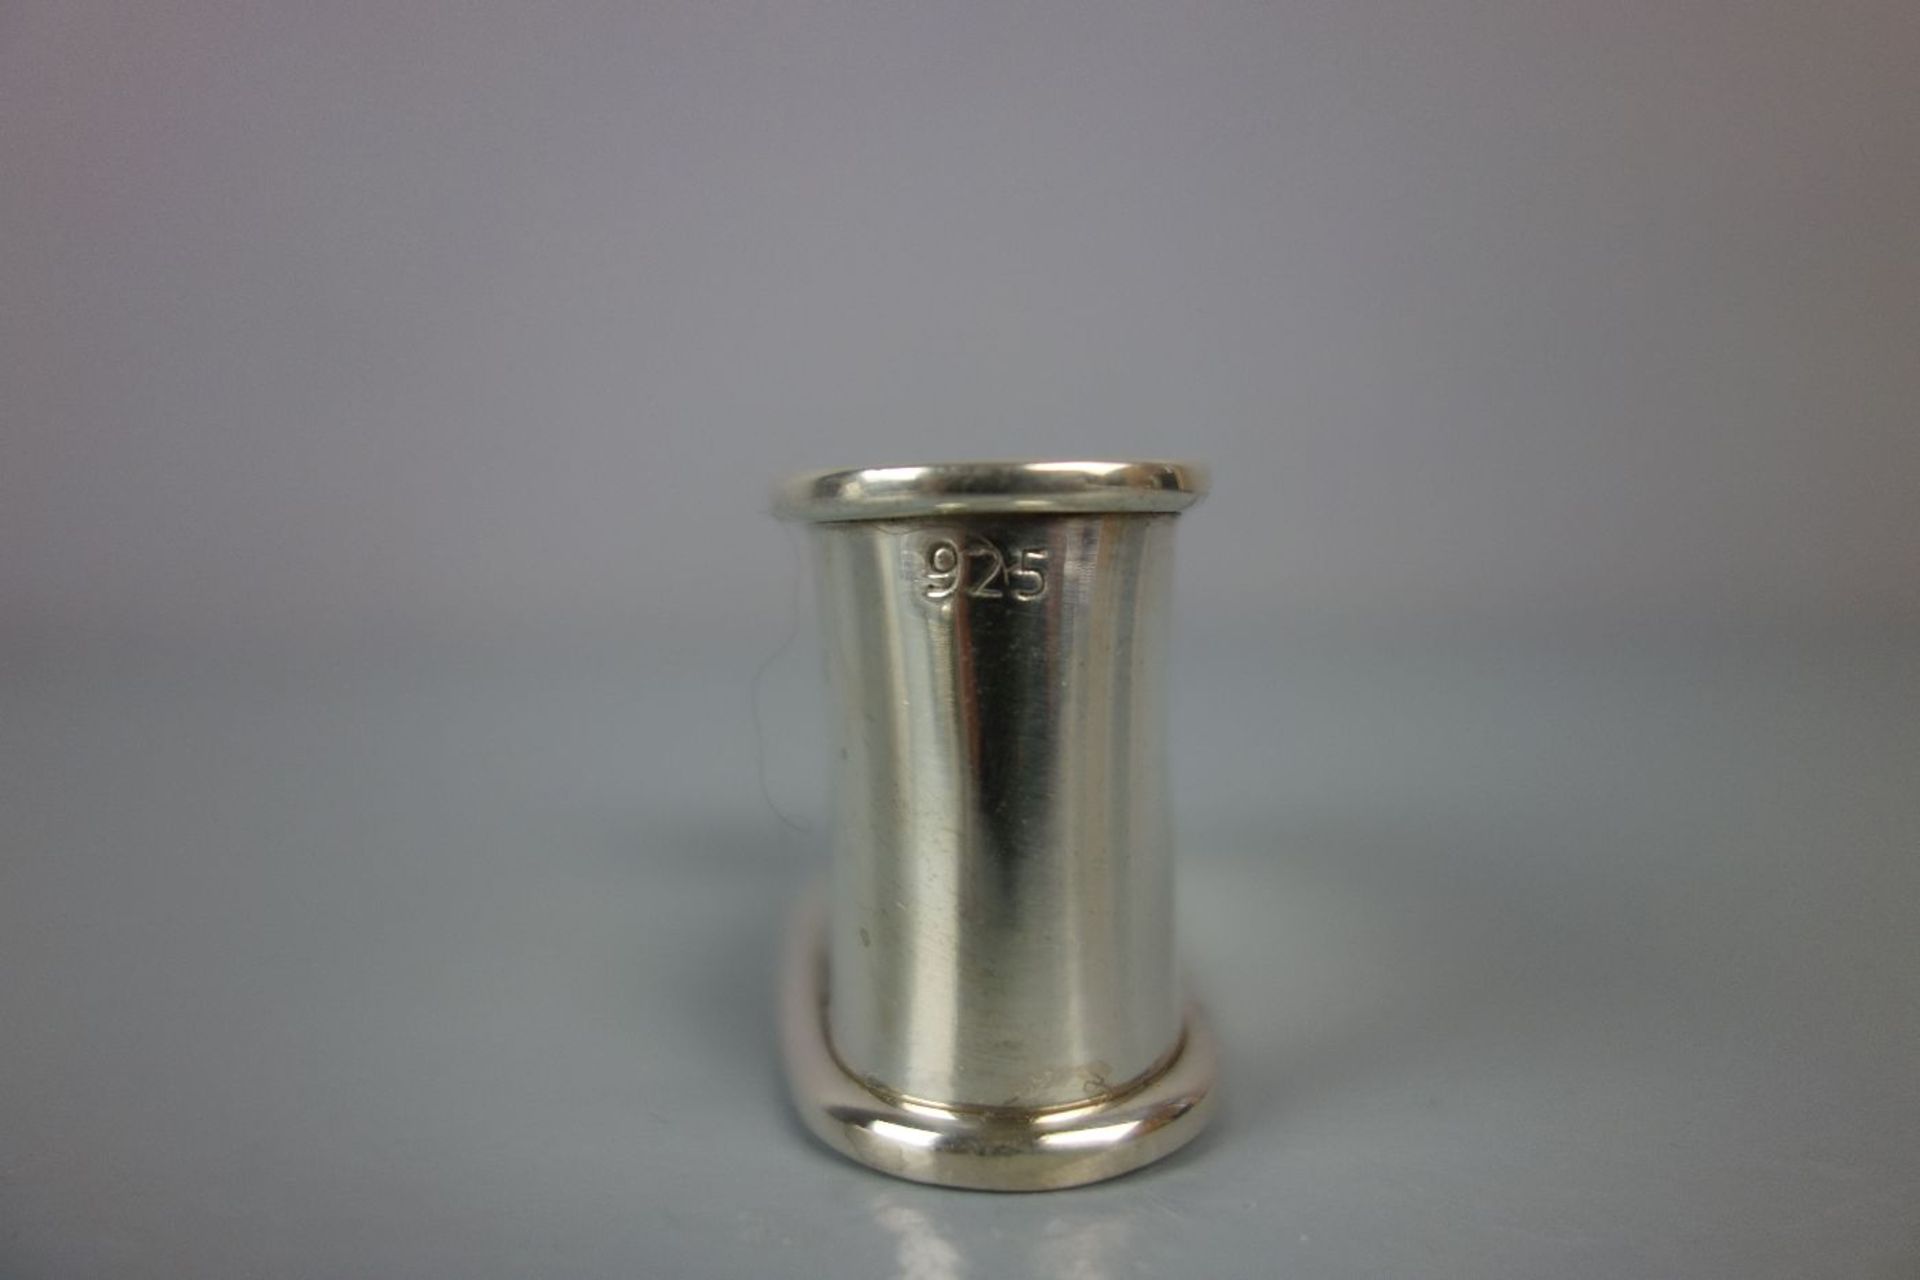 6 SERVIETTENRINGE / silver napkin rings, 925er Silber (insgesamt 124 g), ovale Form mit profilierten - Bild 3 aus 3